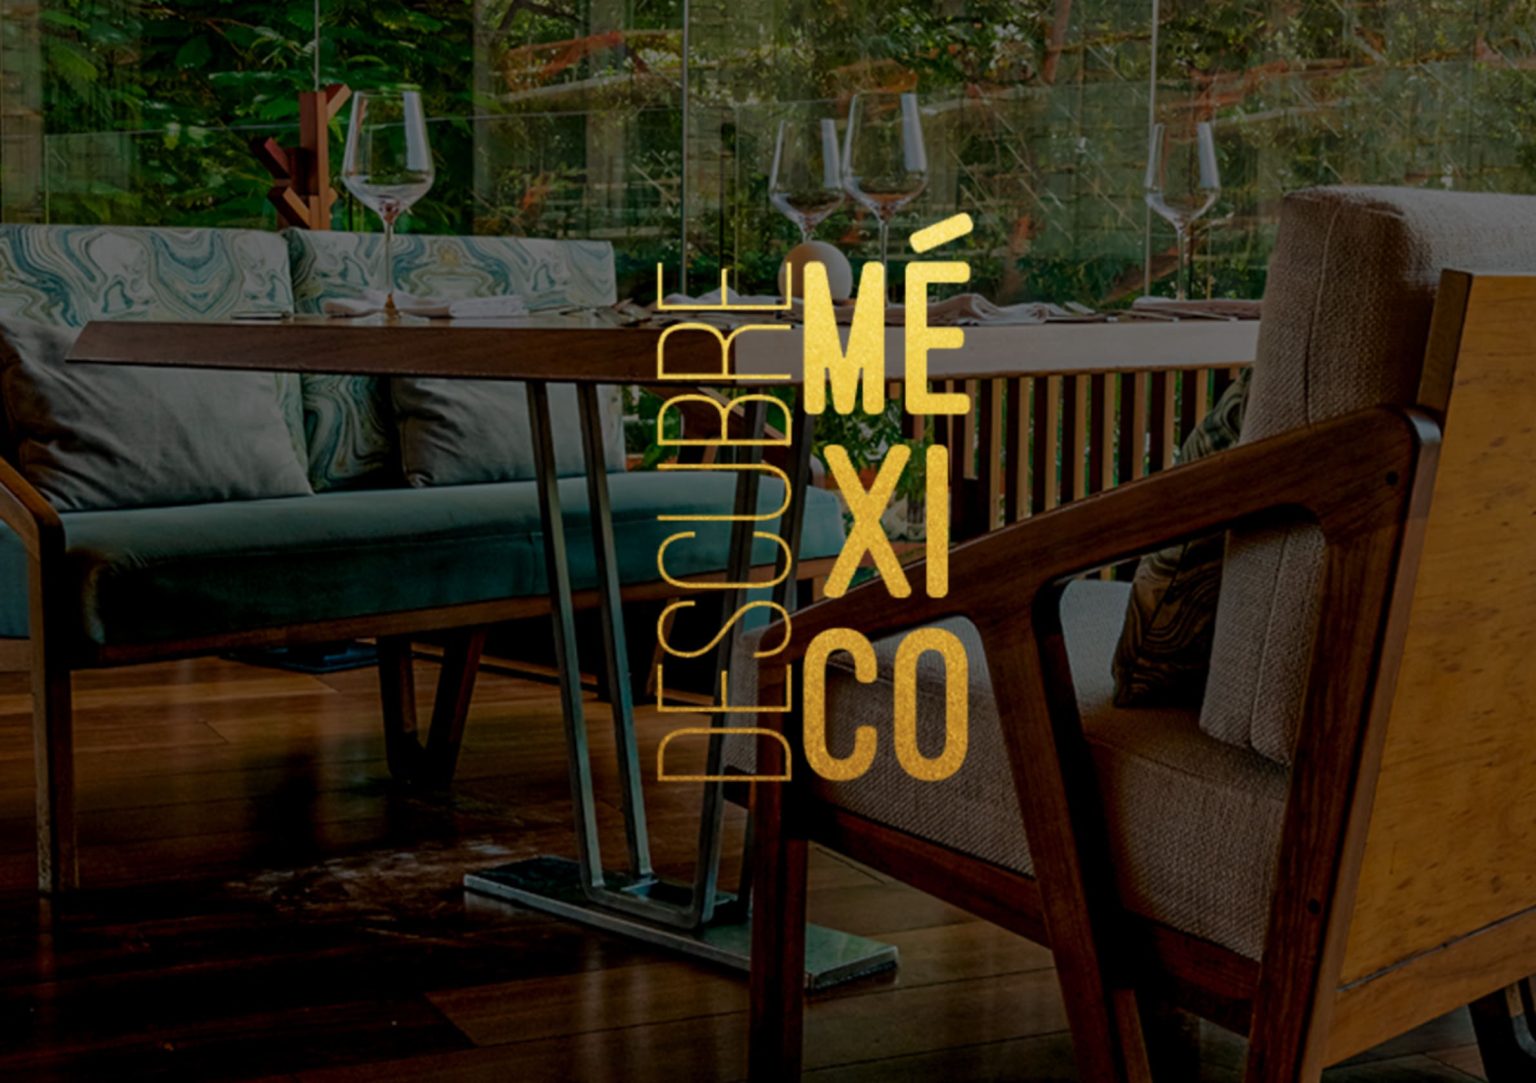 DESCUBRE-MEXICO-1536x1083